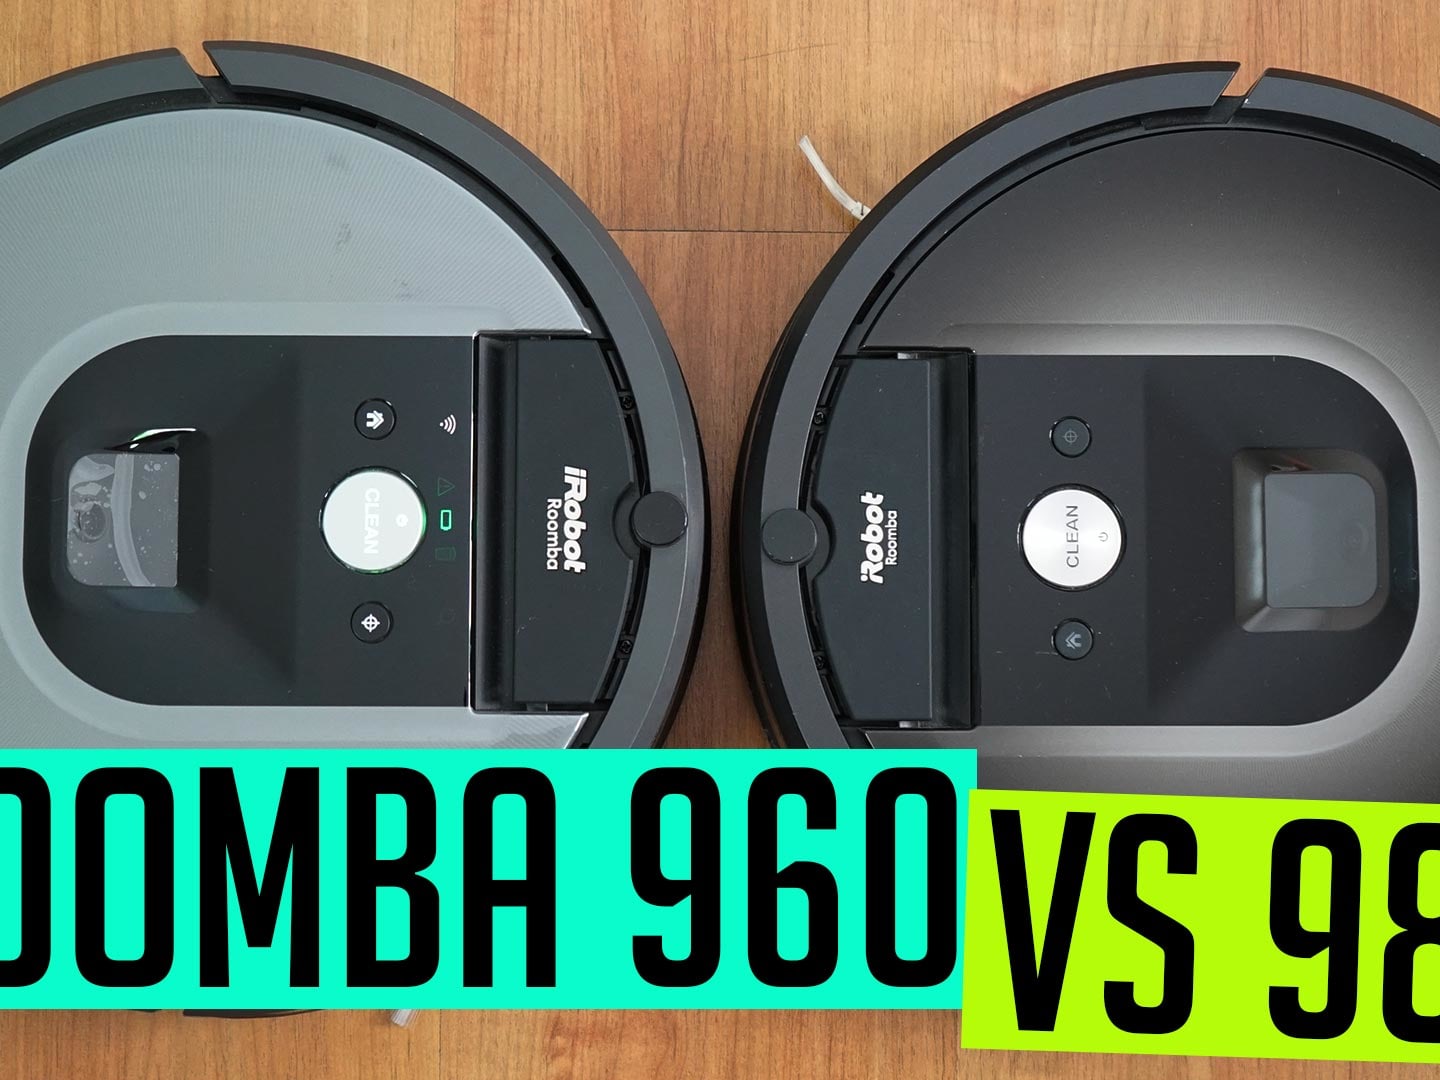 Roomba 960 vs 980: 980 The Extra $$$?